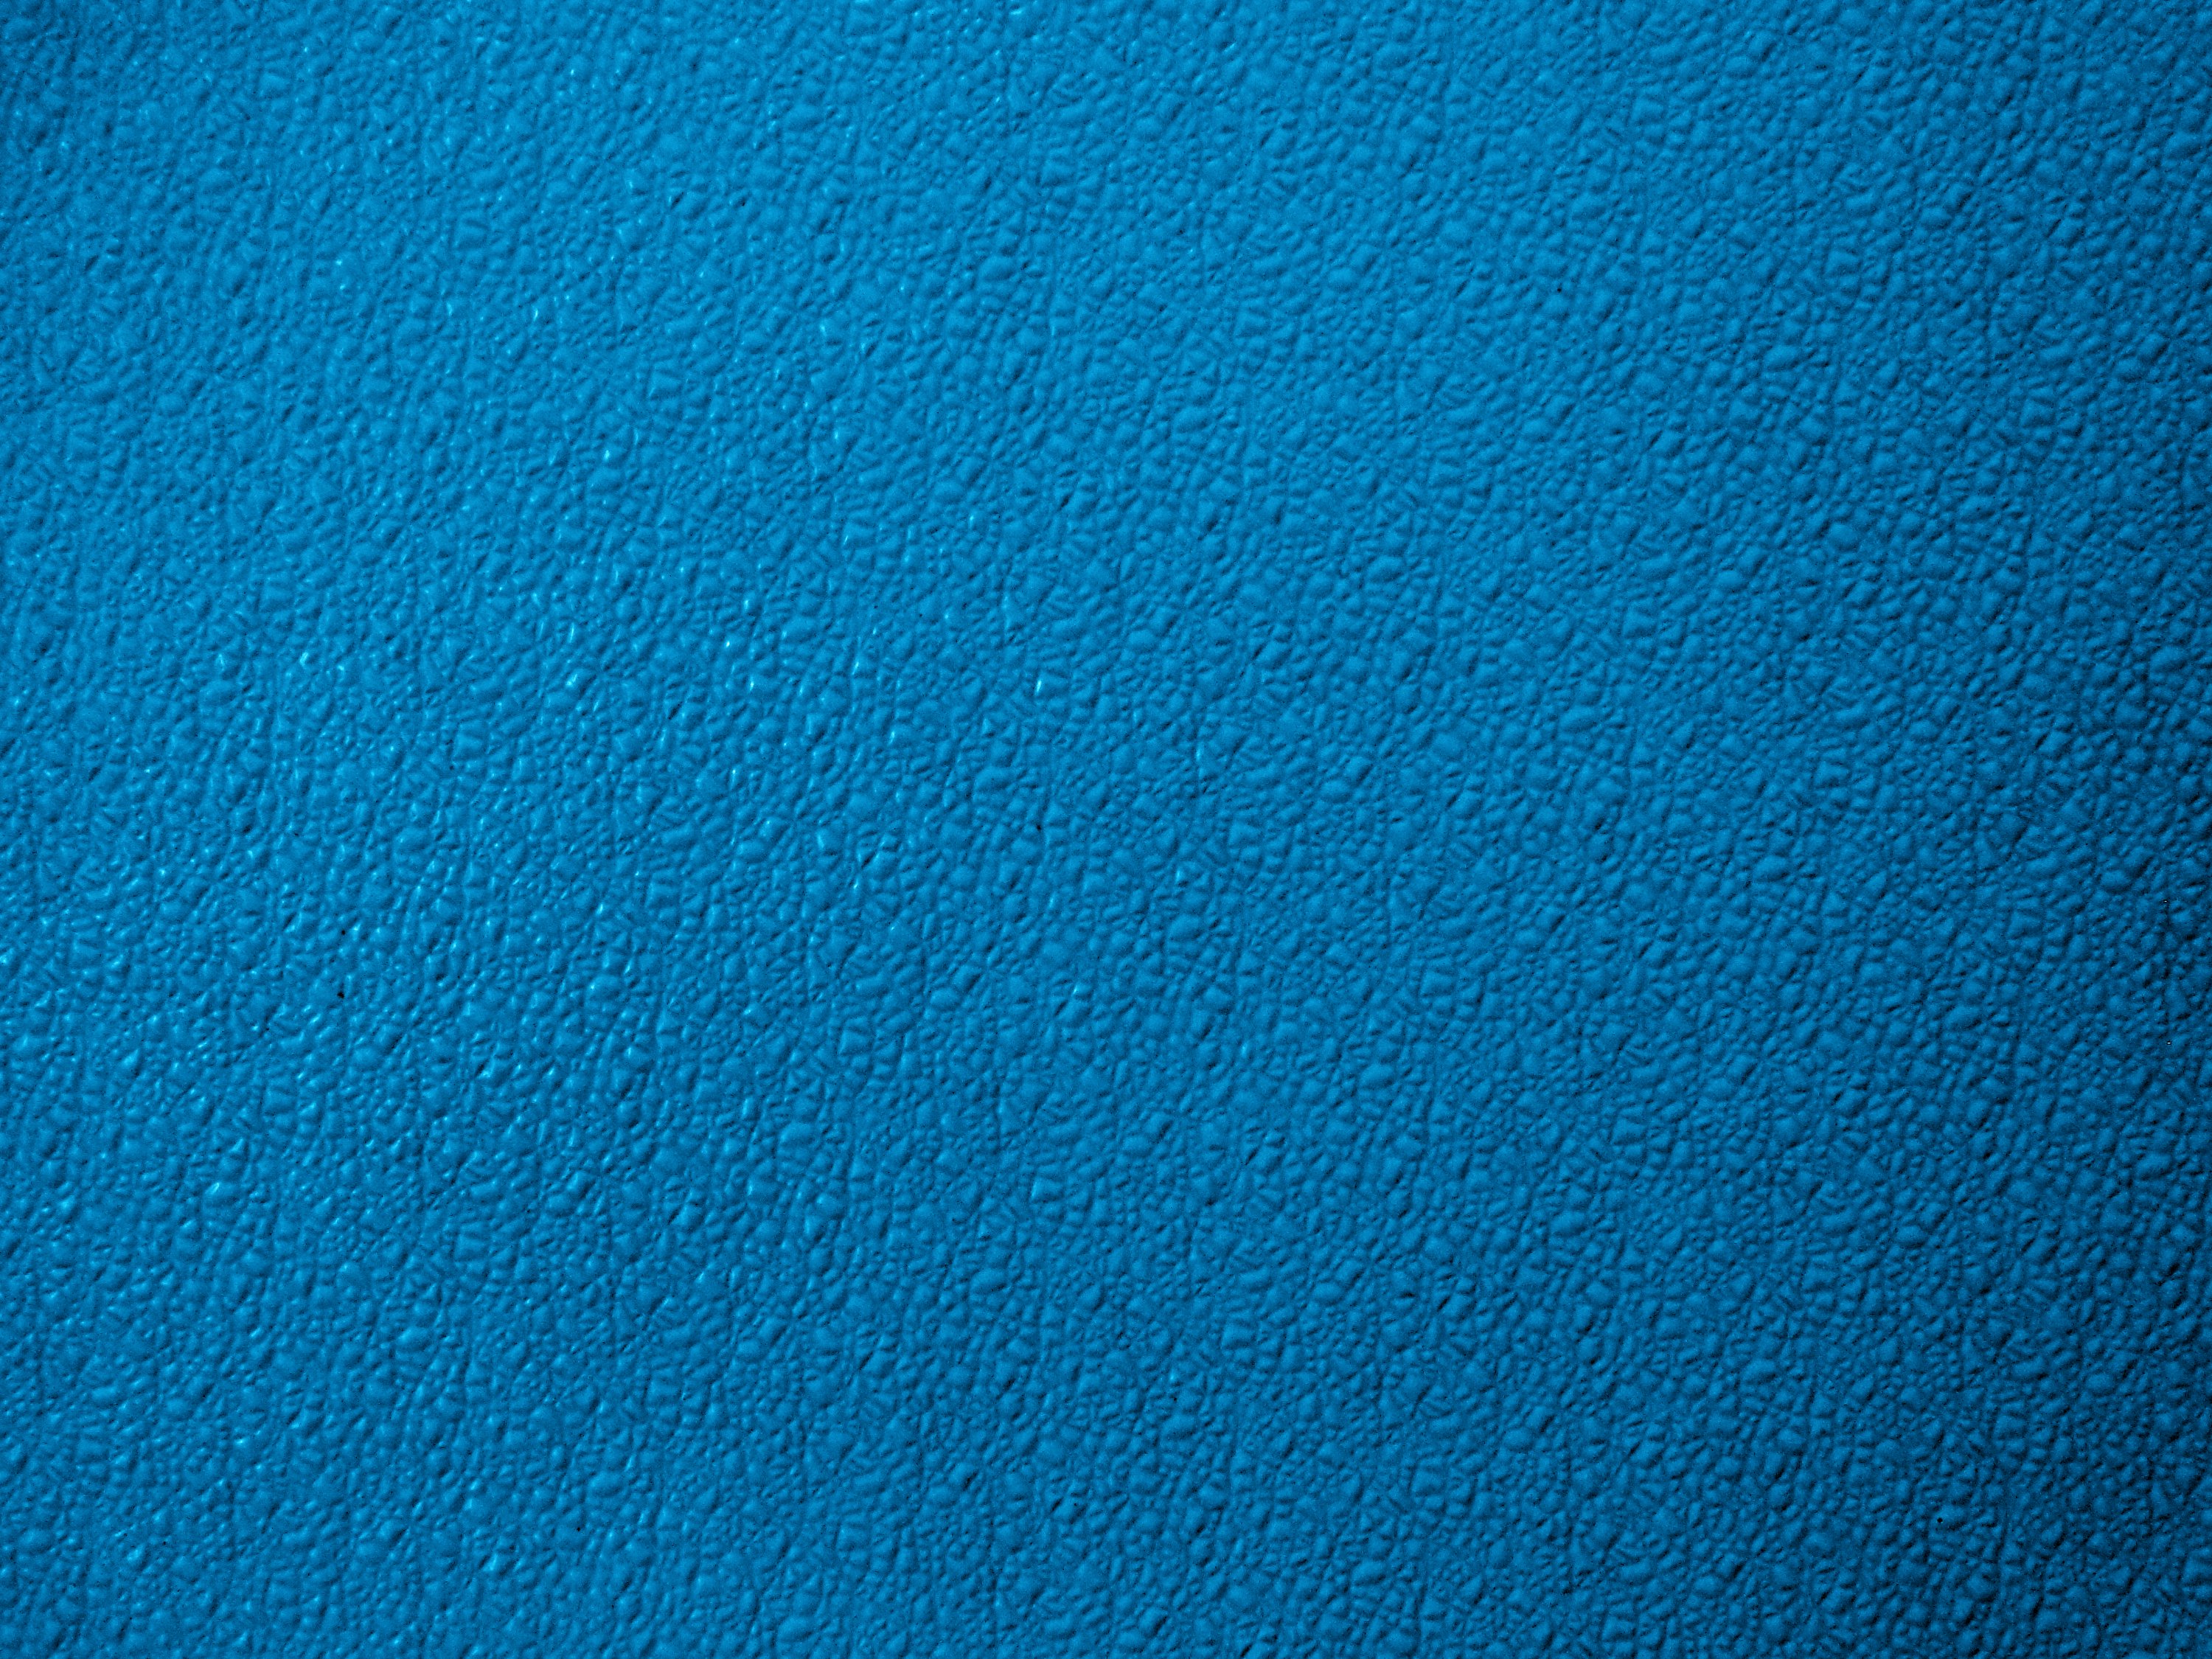 Bumpy Azure Blue Plastic Texture Picture | Free Photograph | Photos ...